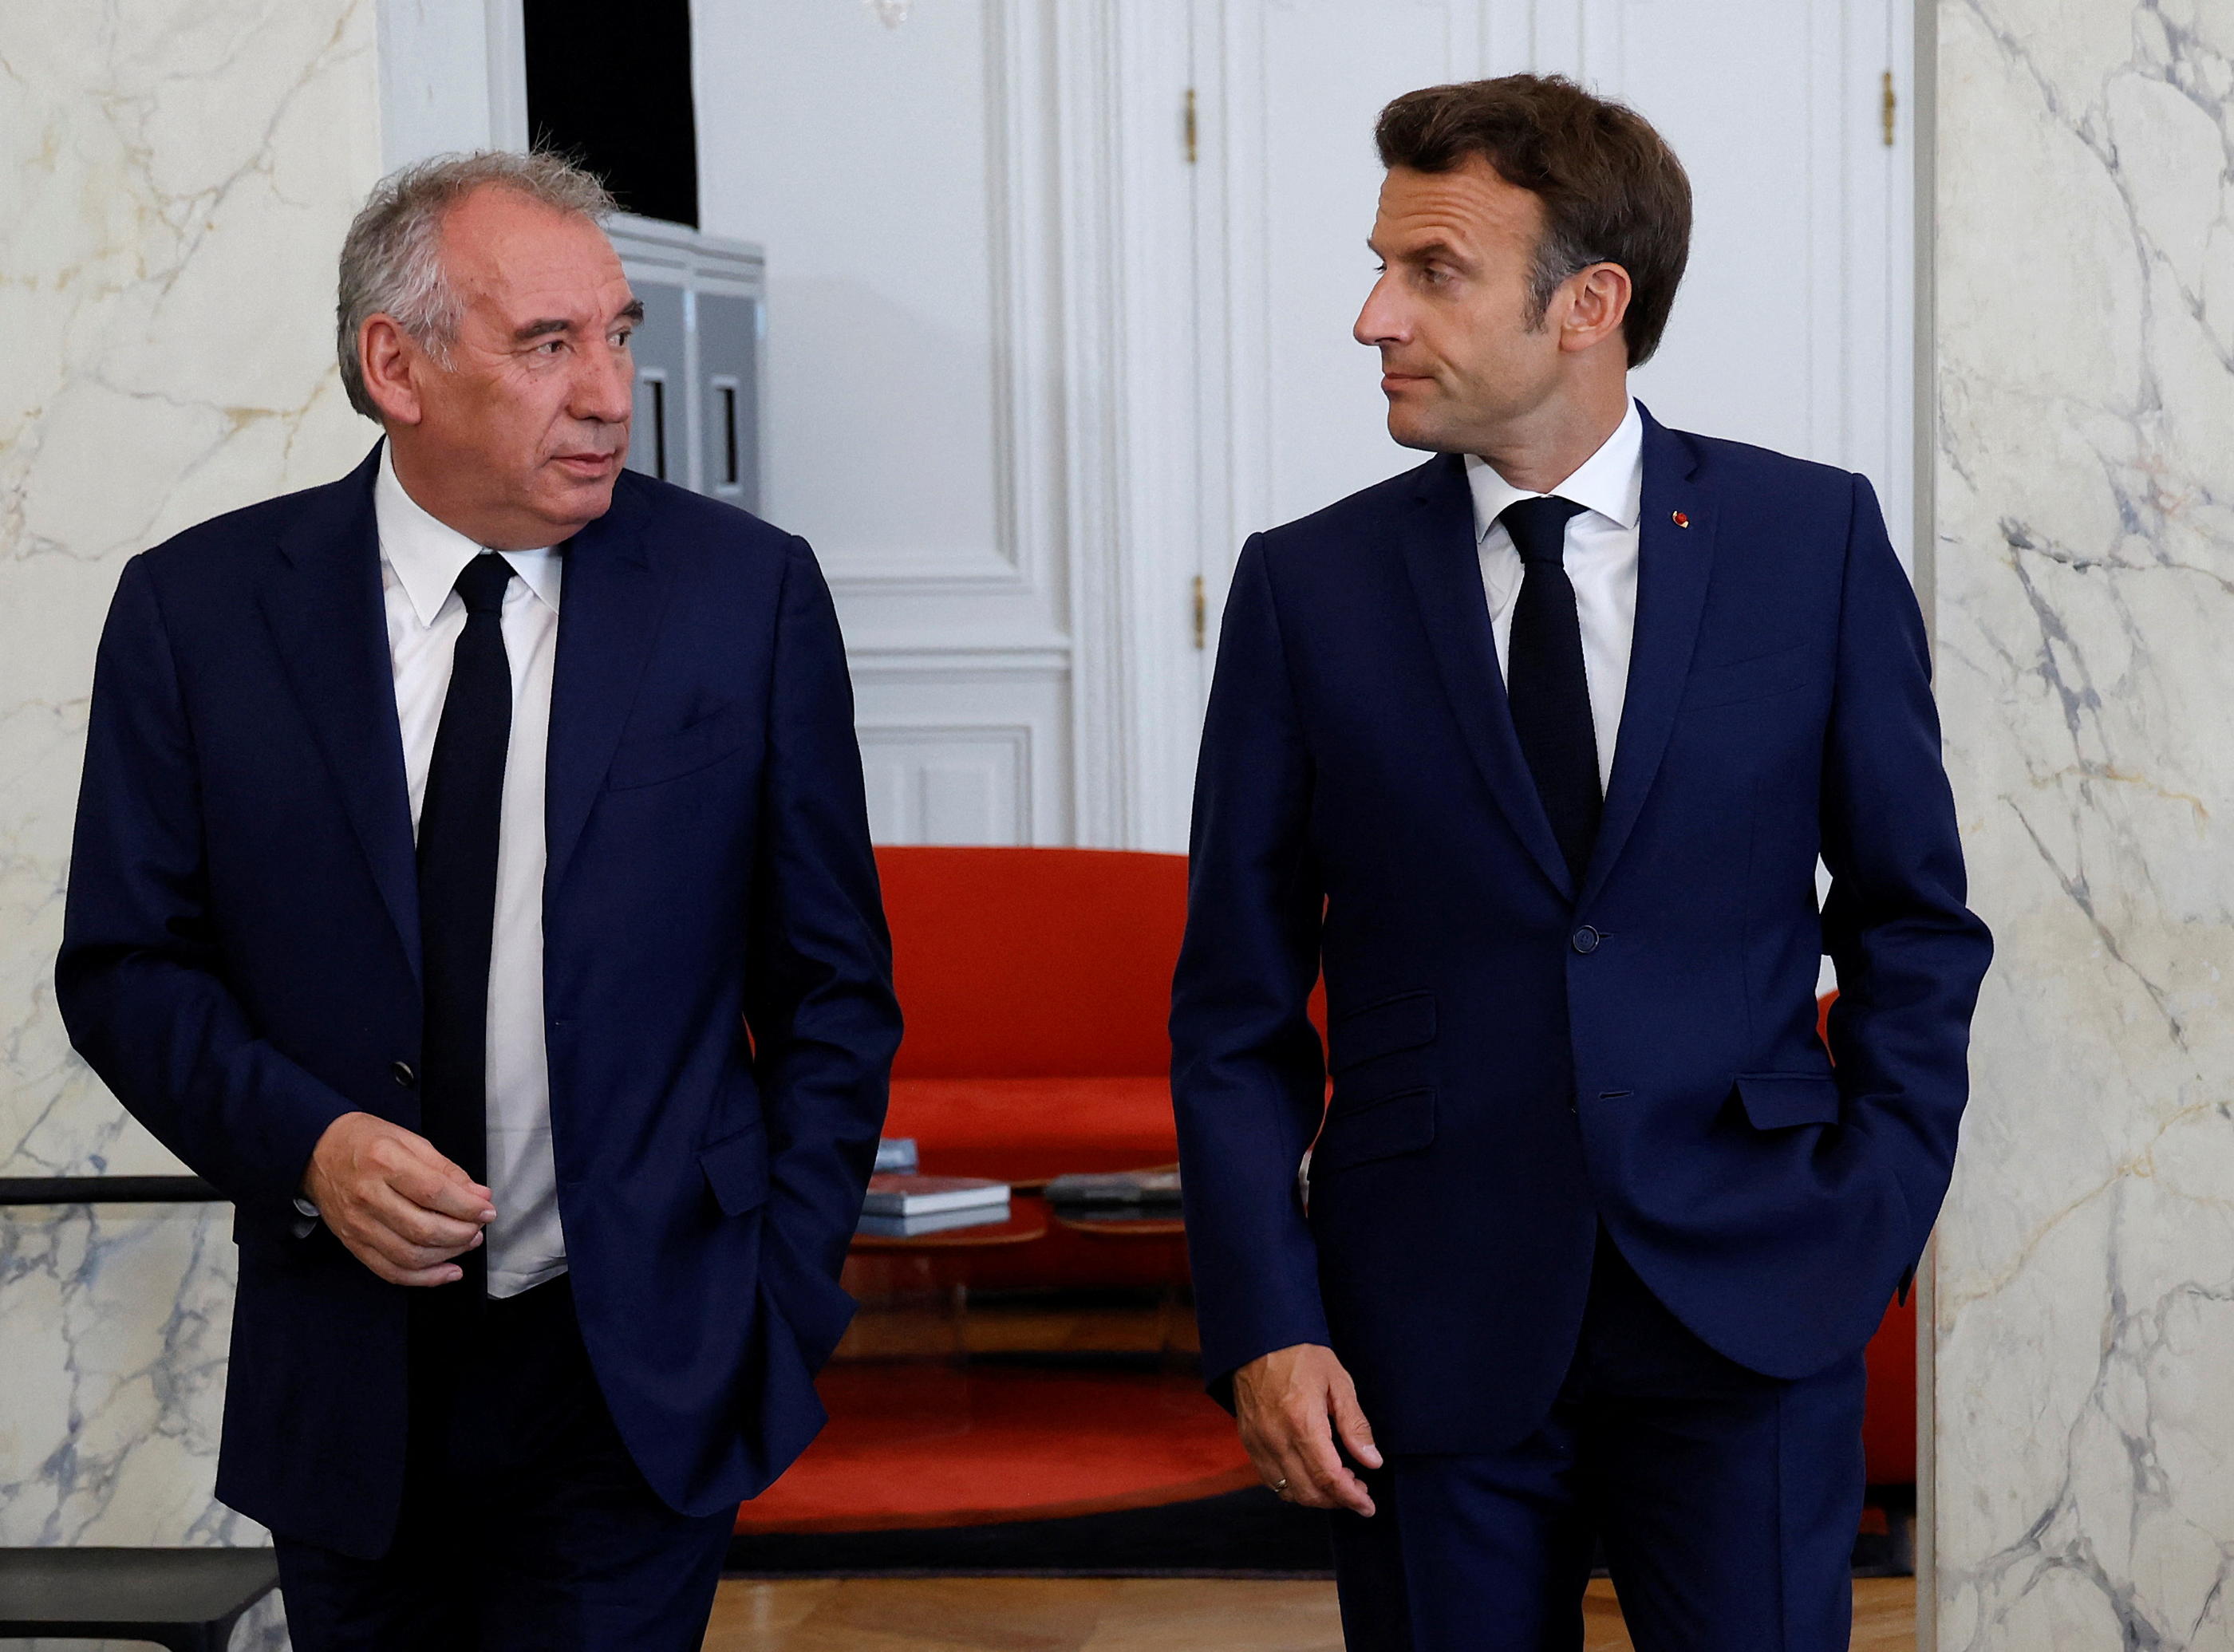 Le leader du MoDem et le président de la République se sont rencontrés le 21 juin 2022. Reuters/Ludovic Marin